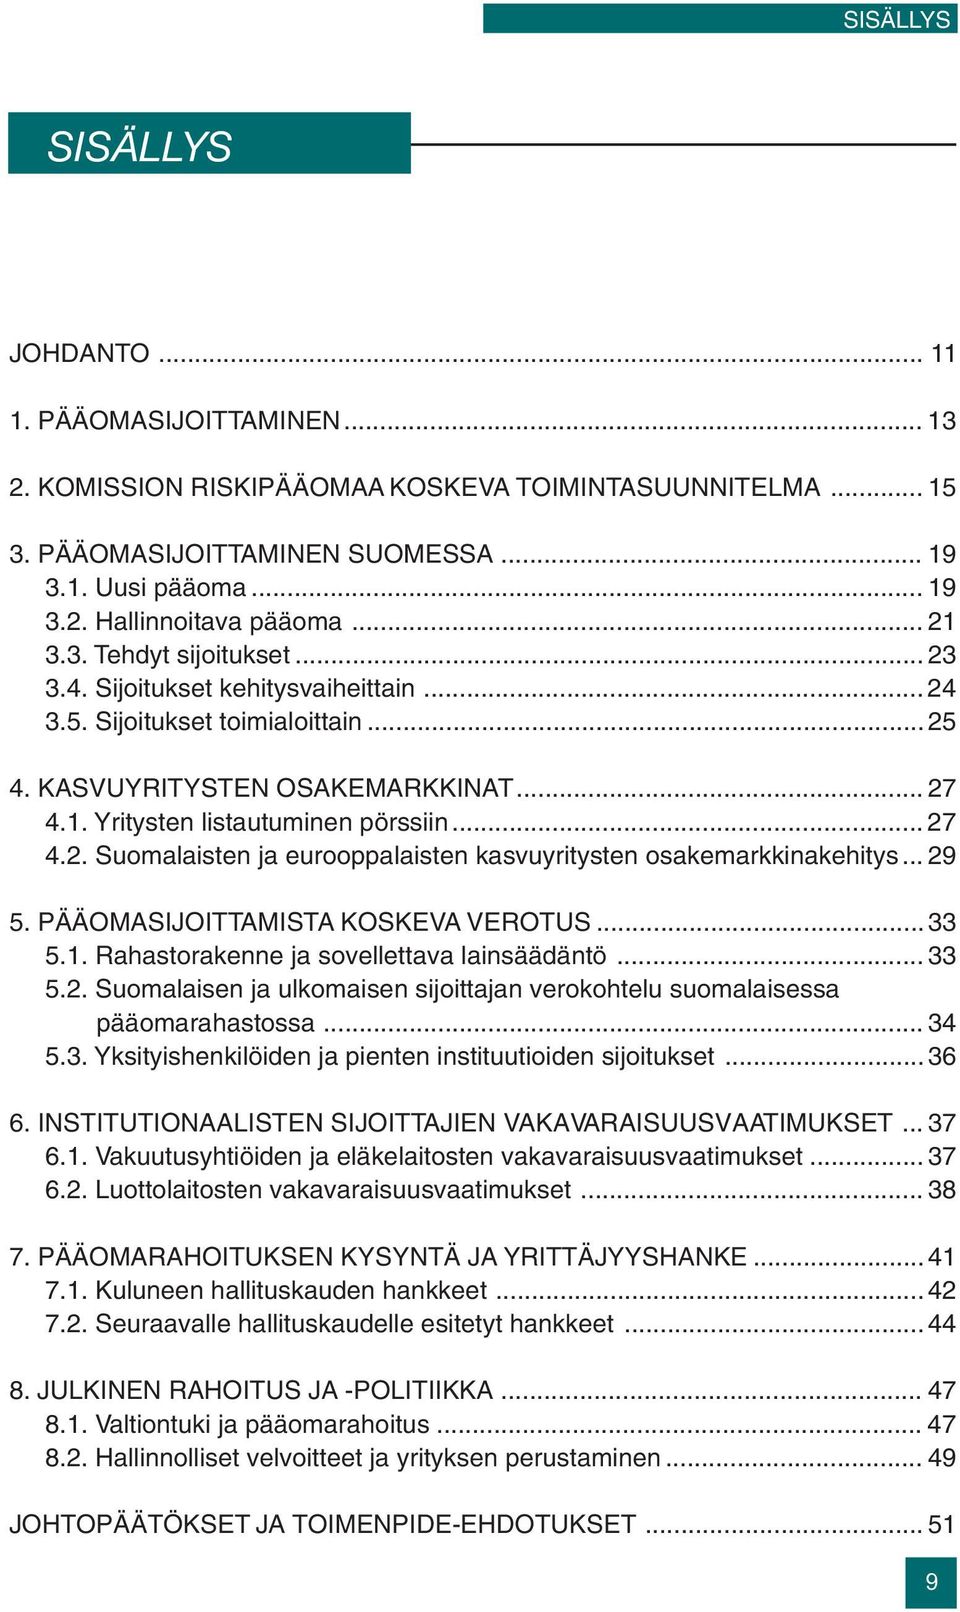 .. 29 5. PÄÄOMASIJOITTAMISTA KOSKEVA VEROTUS...33 5.1. Rahastorakenne ja sovellettava lainsäädäntö... 33 5.2. Suomalaisen ja ulkomaisen sijoittajan verokohtelu suomalaisessa pääomarahastossa... 34 5.